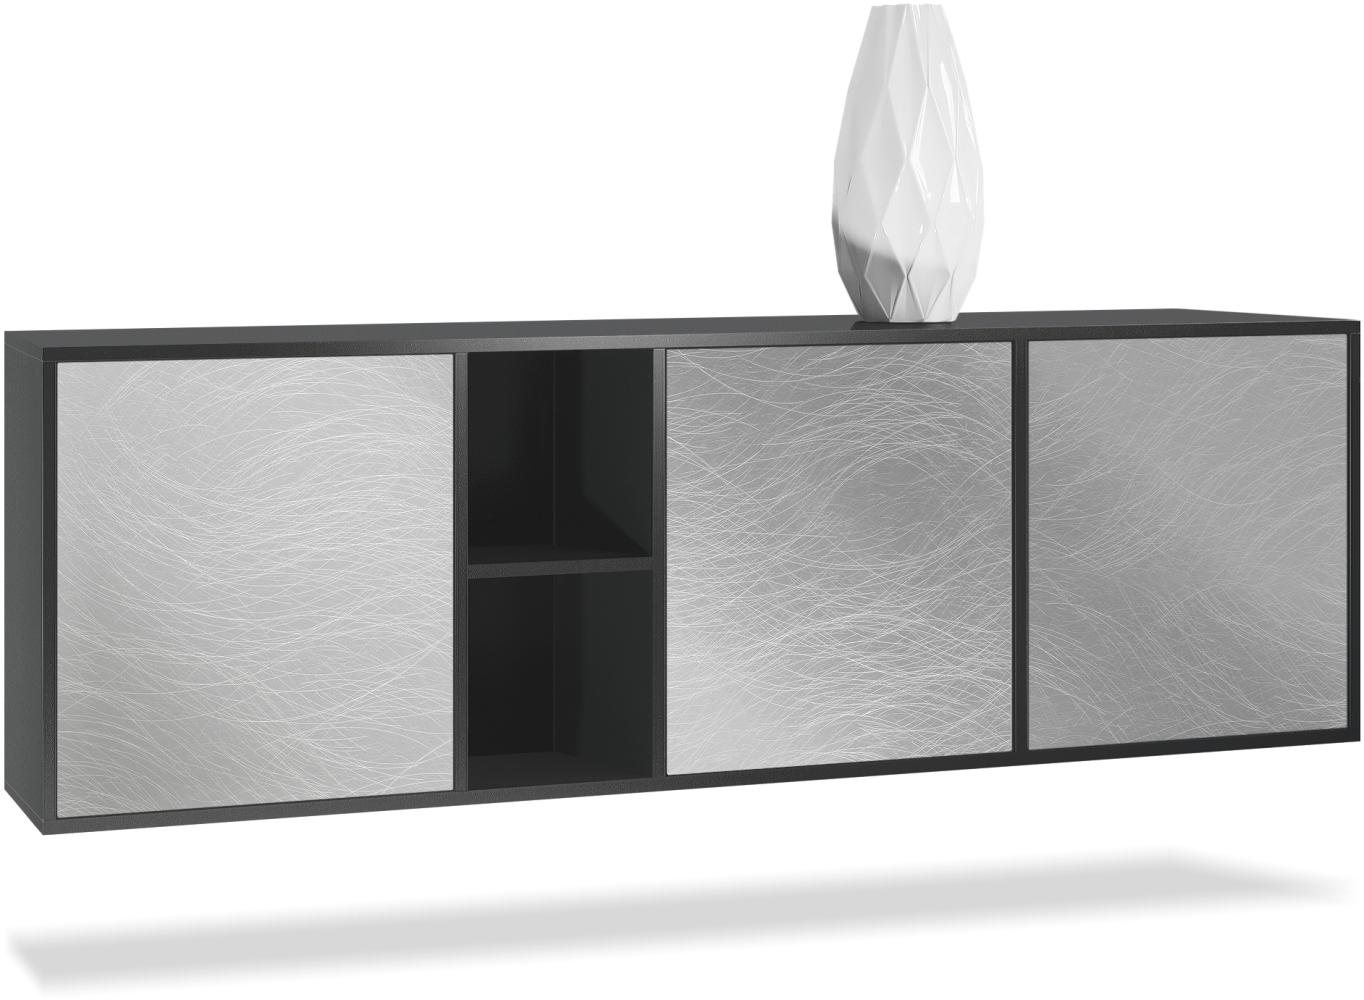 Vladon Kommode Cuba - Schwarz matt/Scratchy Metal - Modernes Sideboard für Ihr Wohnbereich - (BxHxT) 182x53x35 cm Bild 1